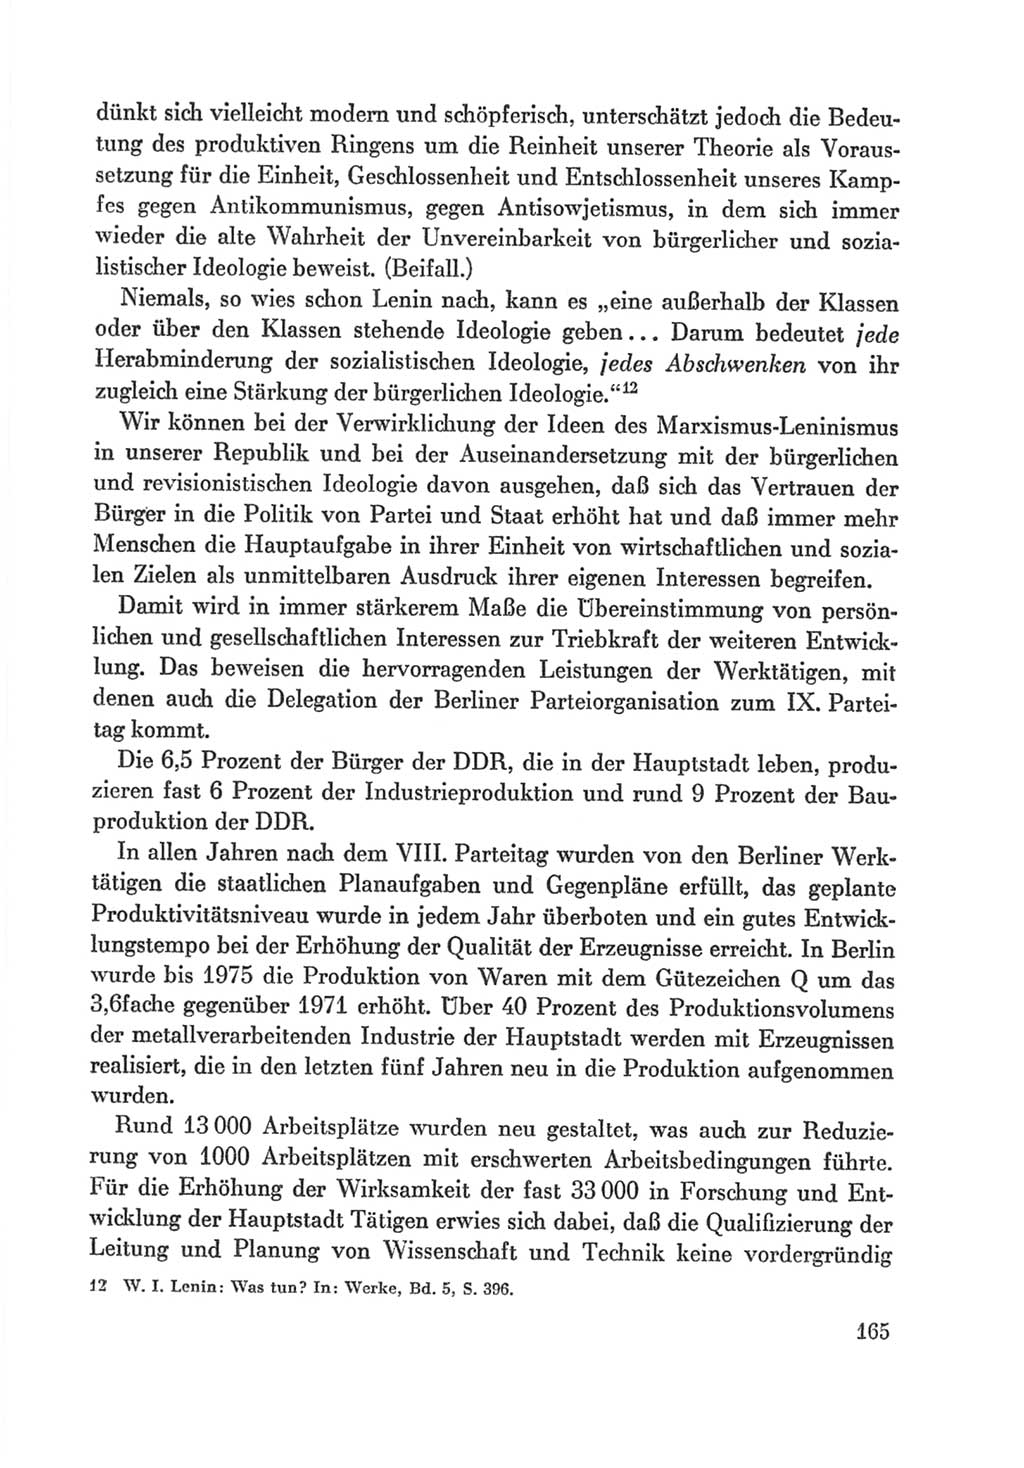 Protokoll der Verhandlungen des Ⅸ. Parteitages der Sozialistischen Einheitspartei Deutschlands (SED) [Deutsche Demokratische Republik (DDR)] 1976, Band 1, Seite 165 (Prot. Verh. Ⅸ. PT SED DDR 1976, Bd. 1, S. 165)